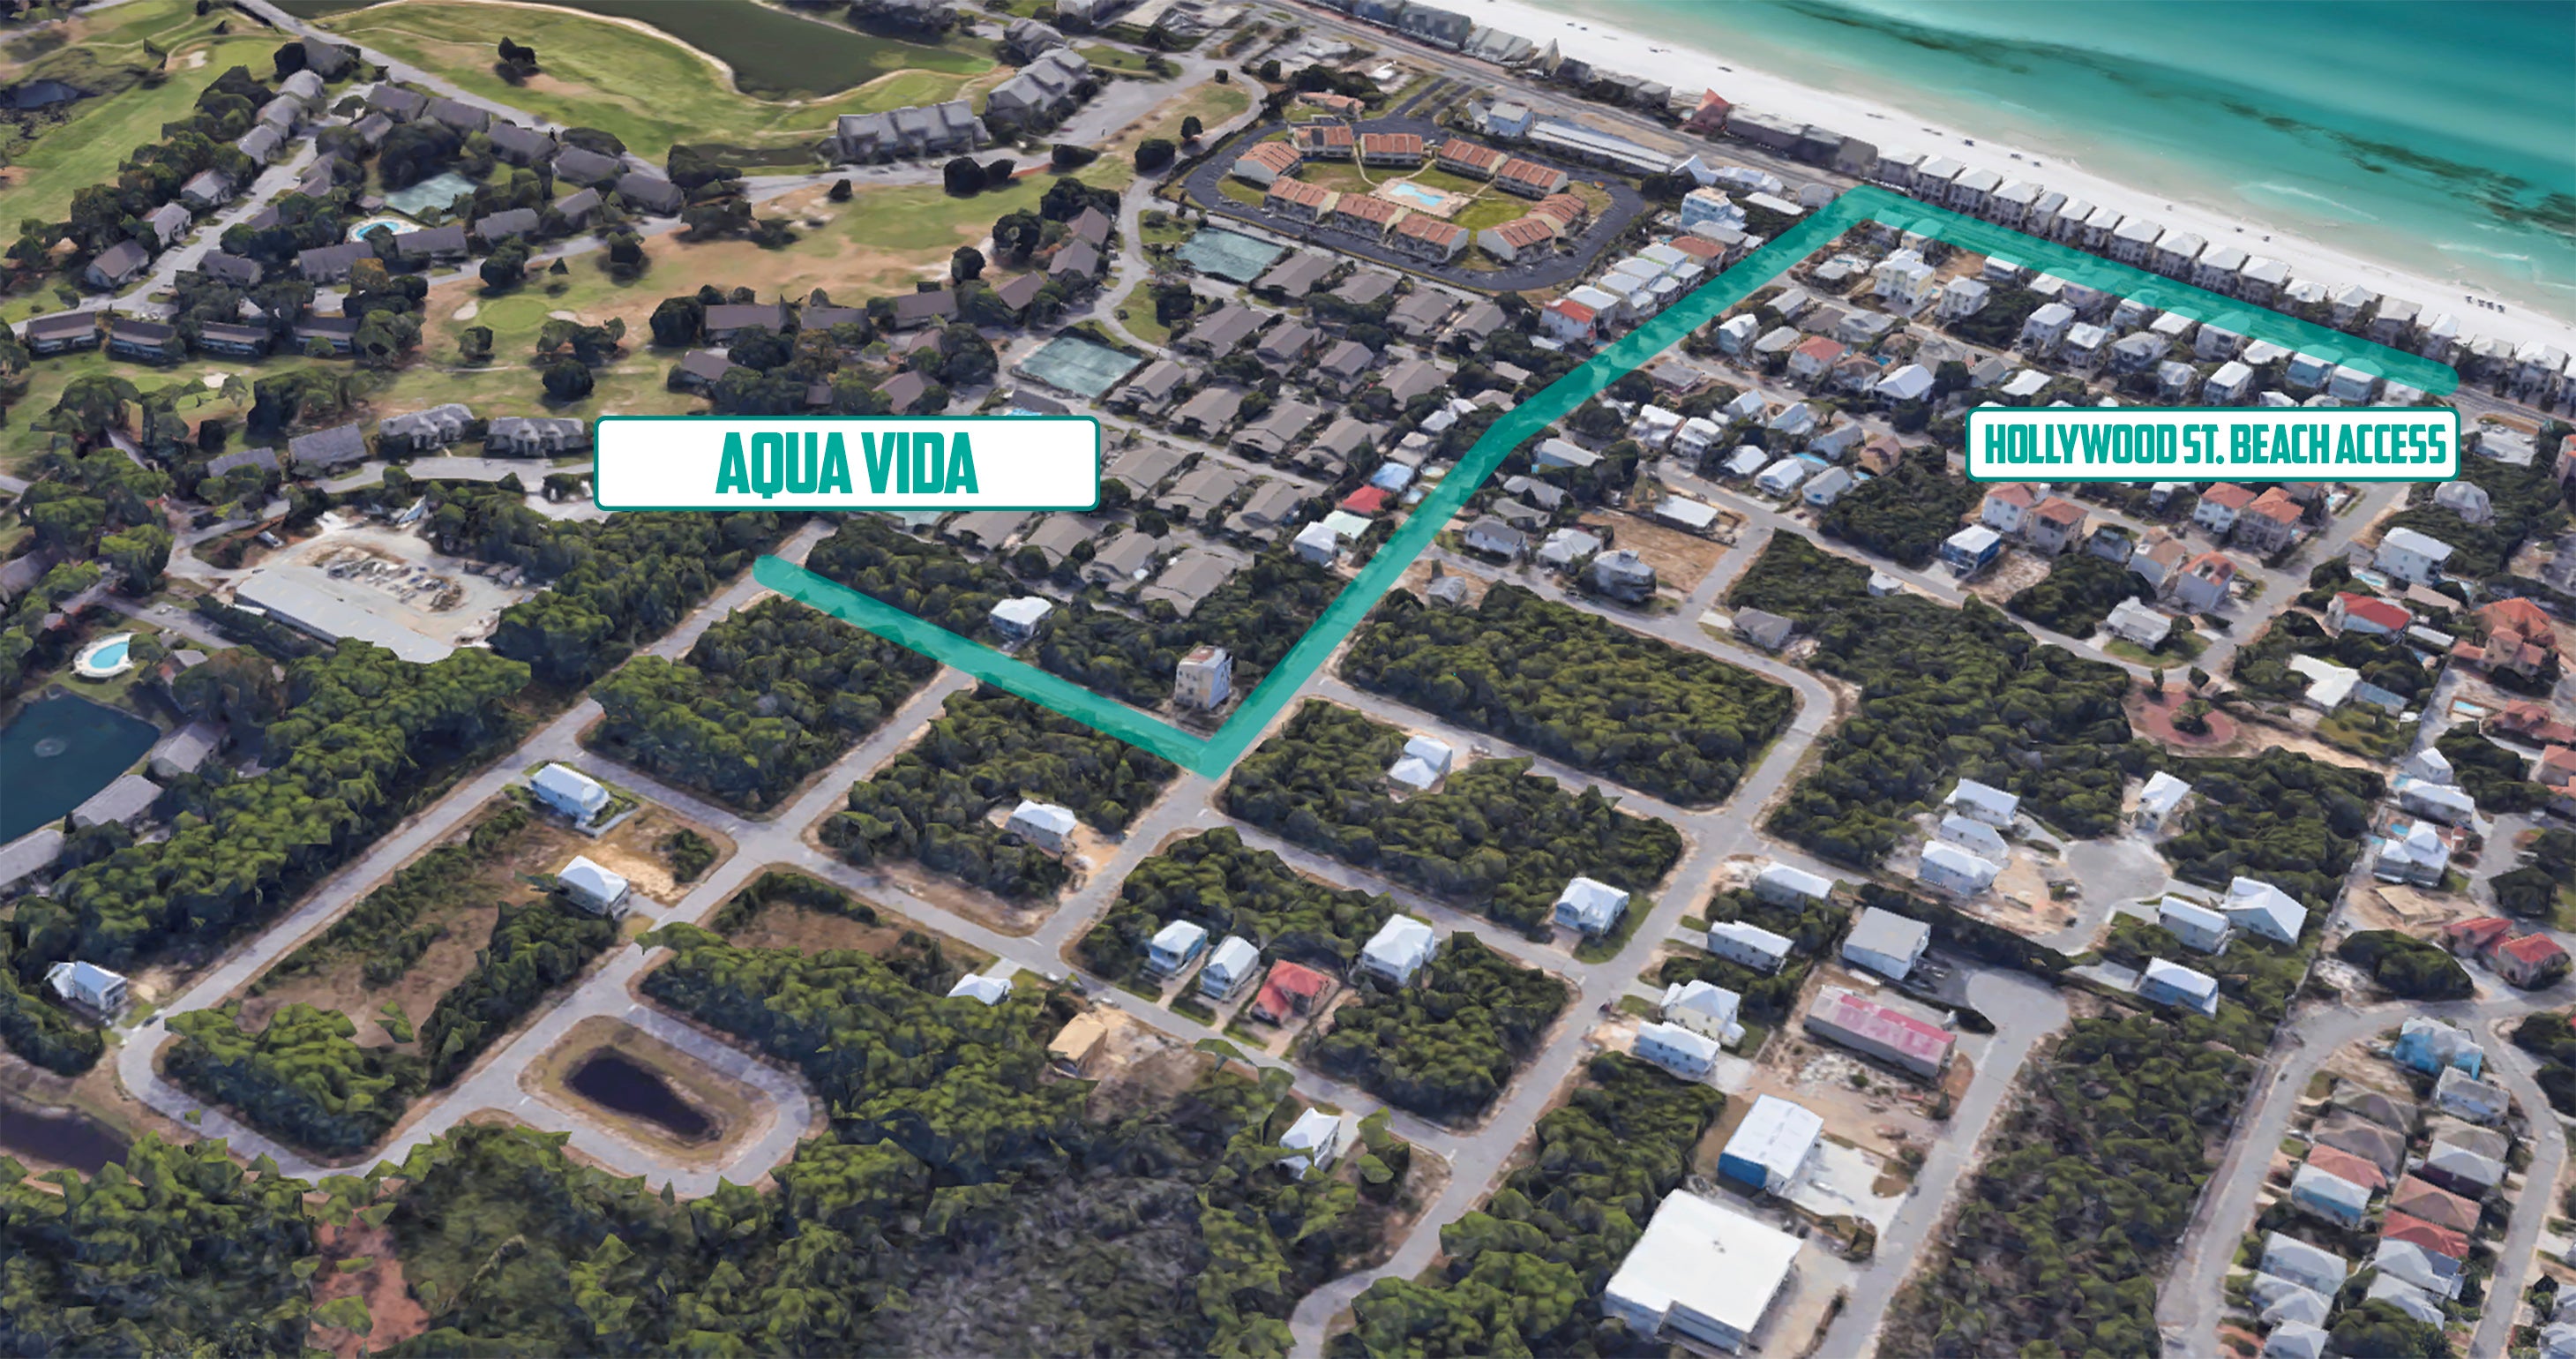 Aqua Vida Beach Access Map